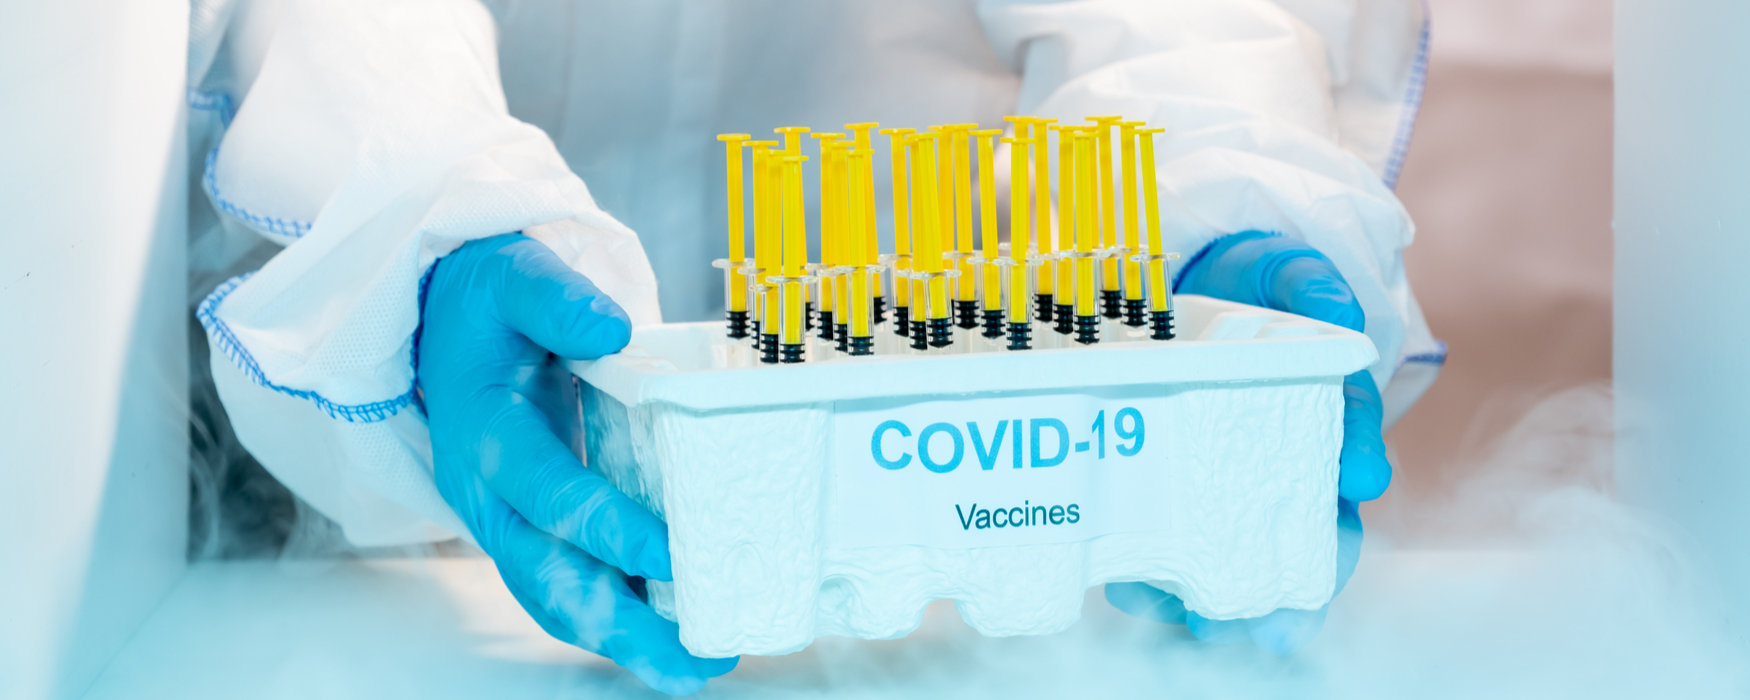 Nebraska covid vaccine freezers - covid 19 vaccine freezer - vaccine storage in Nebraska